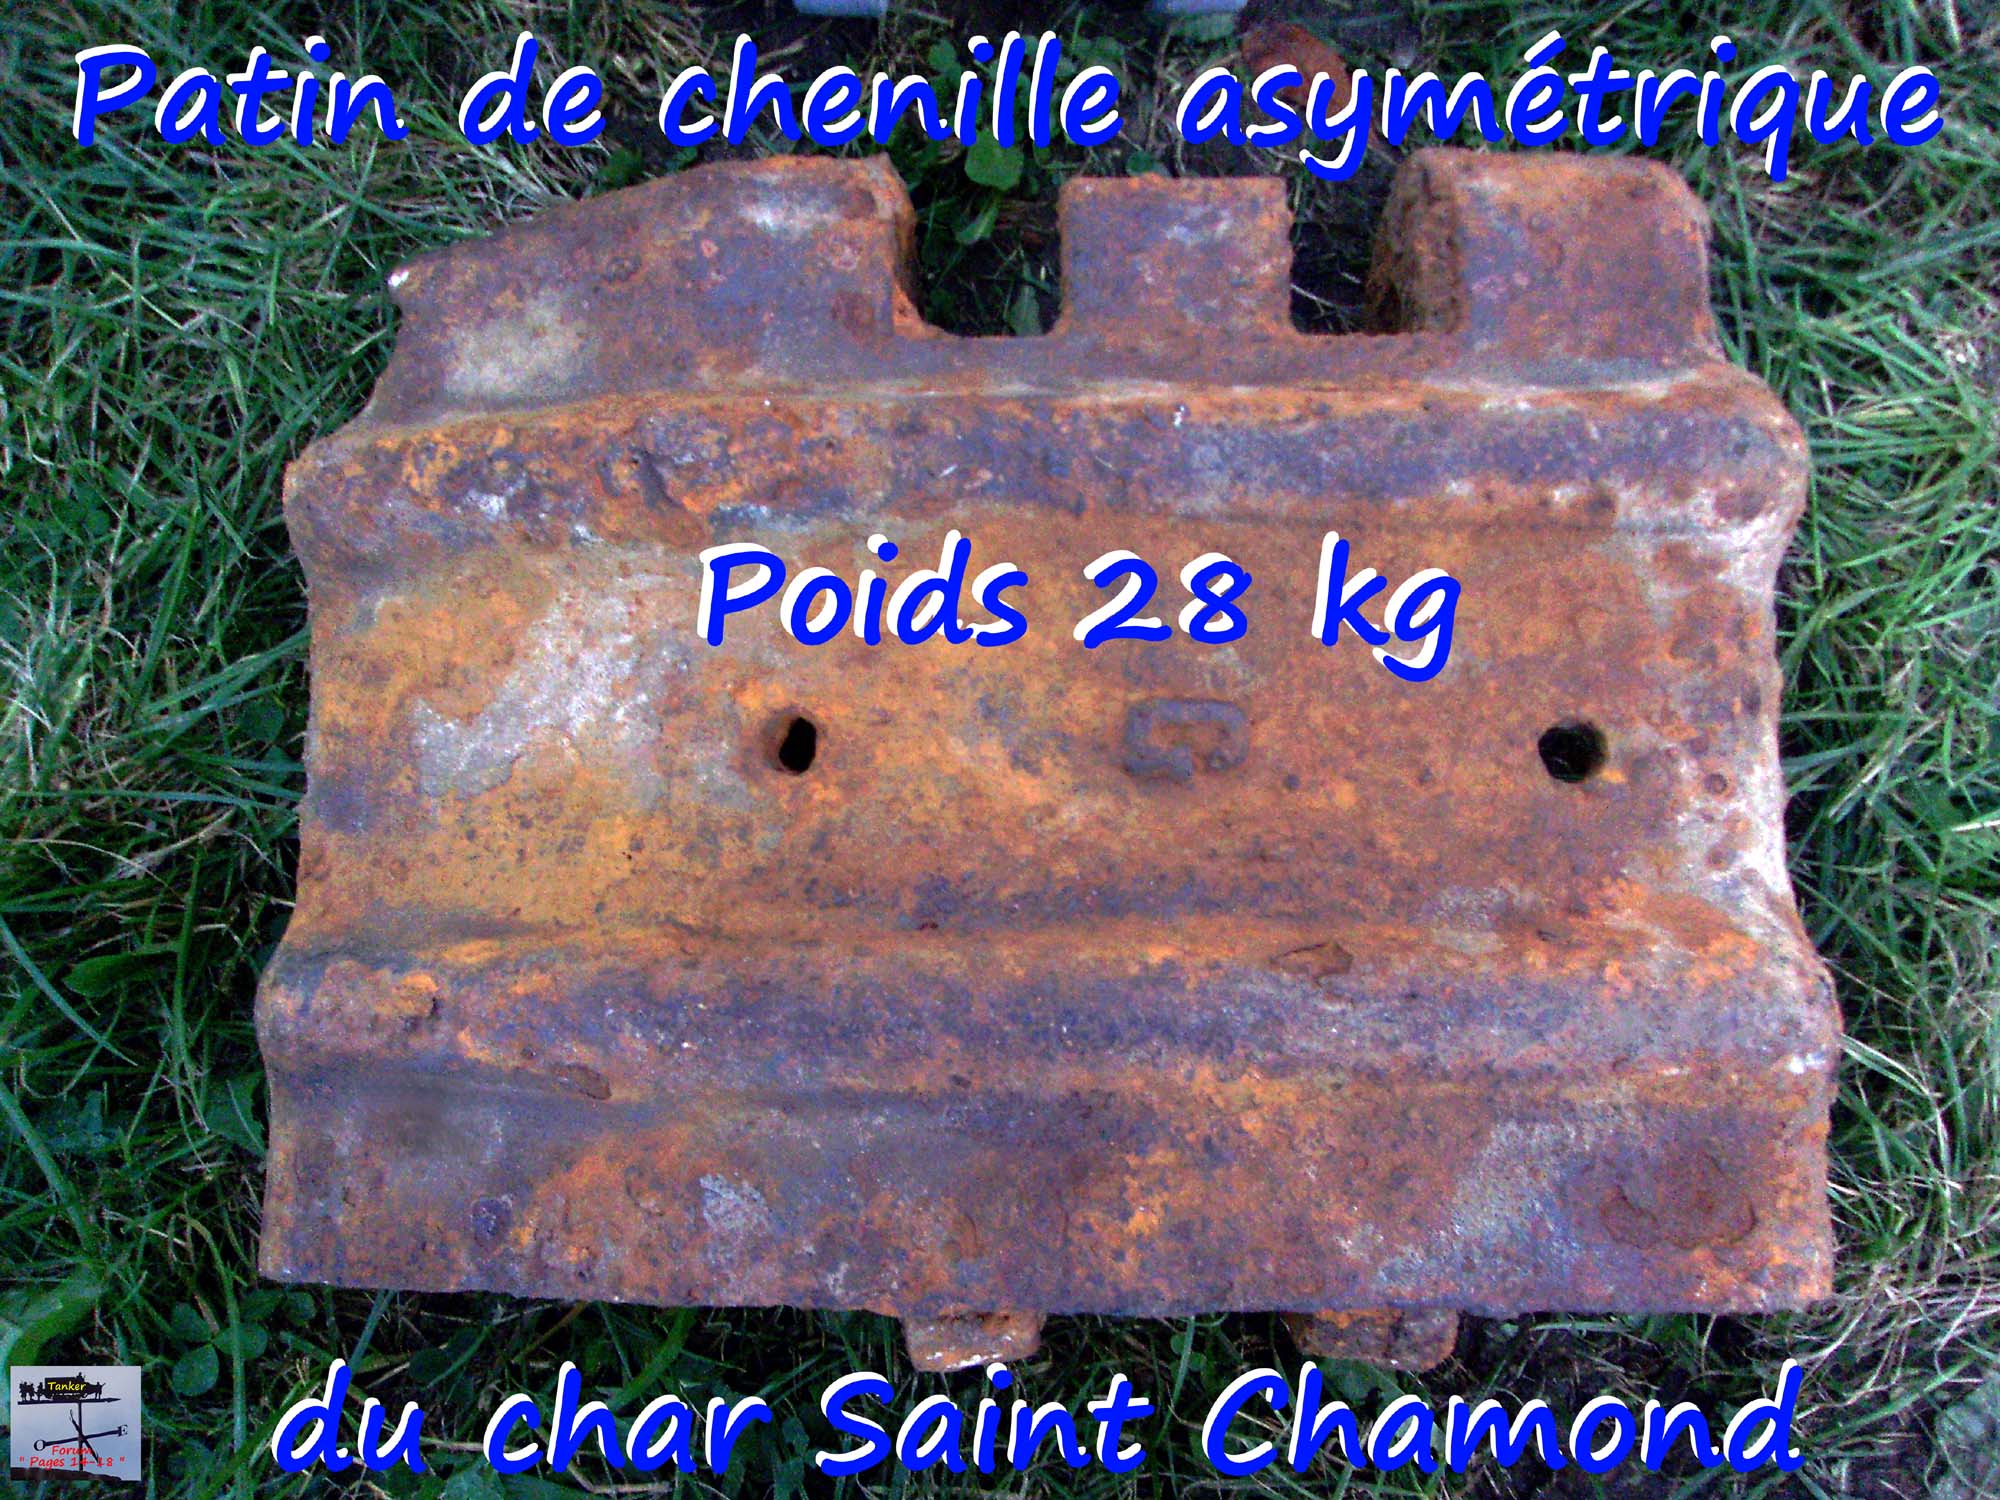 01 - Patin de chenille St Chamond asymétrique.jpg